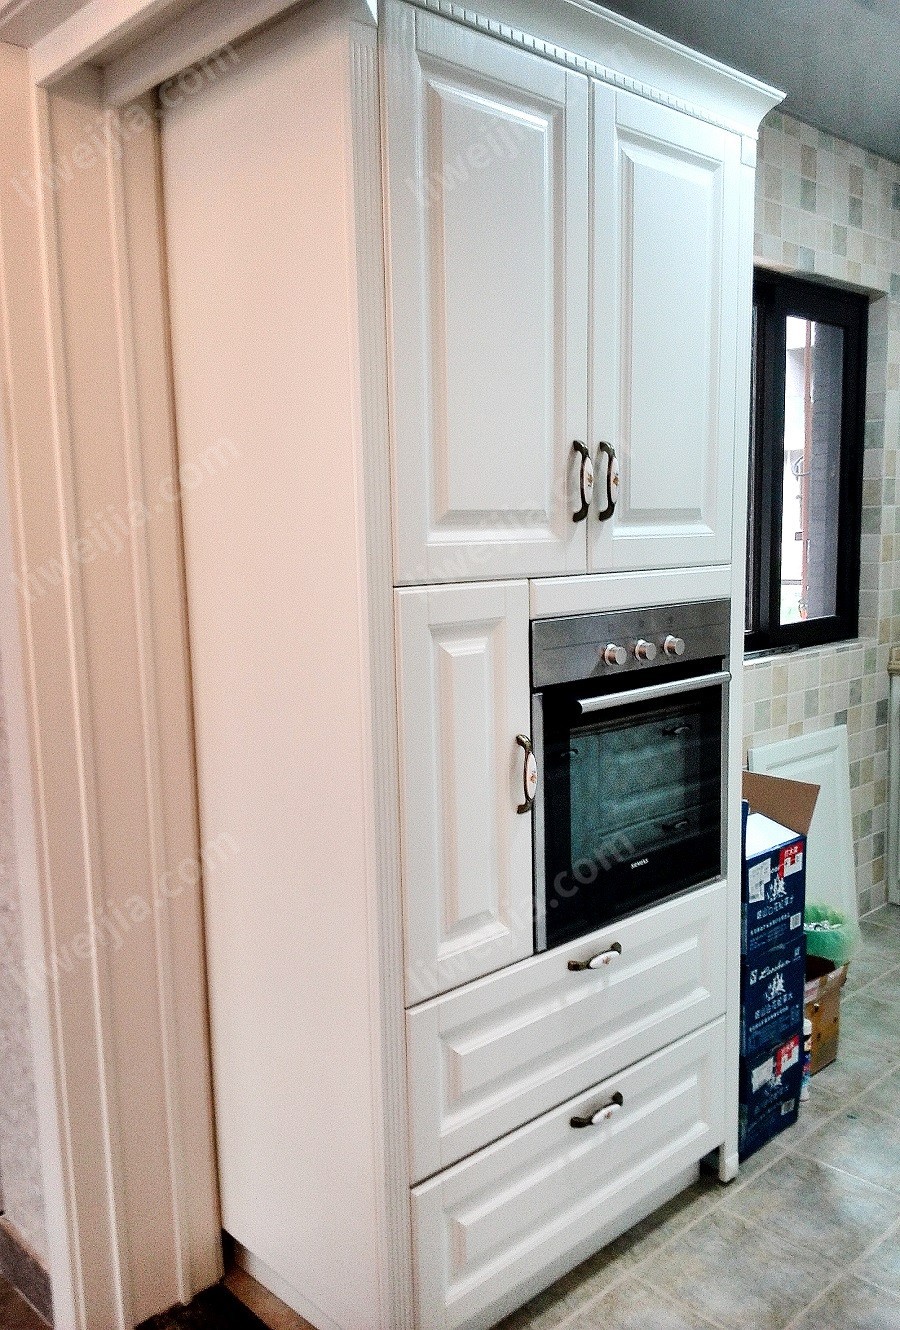 烤箱的设计也堪称厨房的点睛之笔，出于空间和光线的考虑，厨房窗户位置没有打造常规地柜，而是在靠近厨房门的空间打造了收纳能力更强的立型柜，烤箱完美地集成在其中。